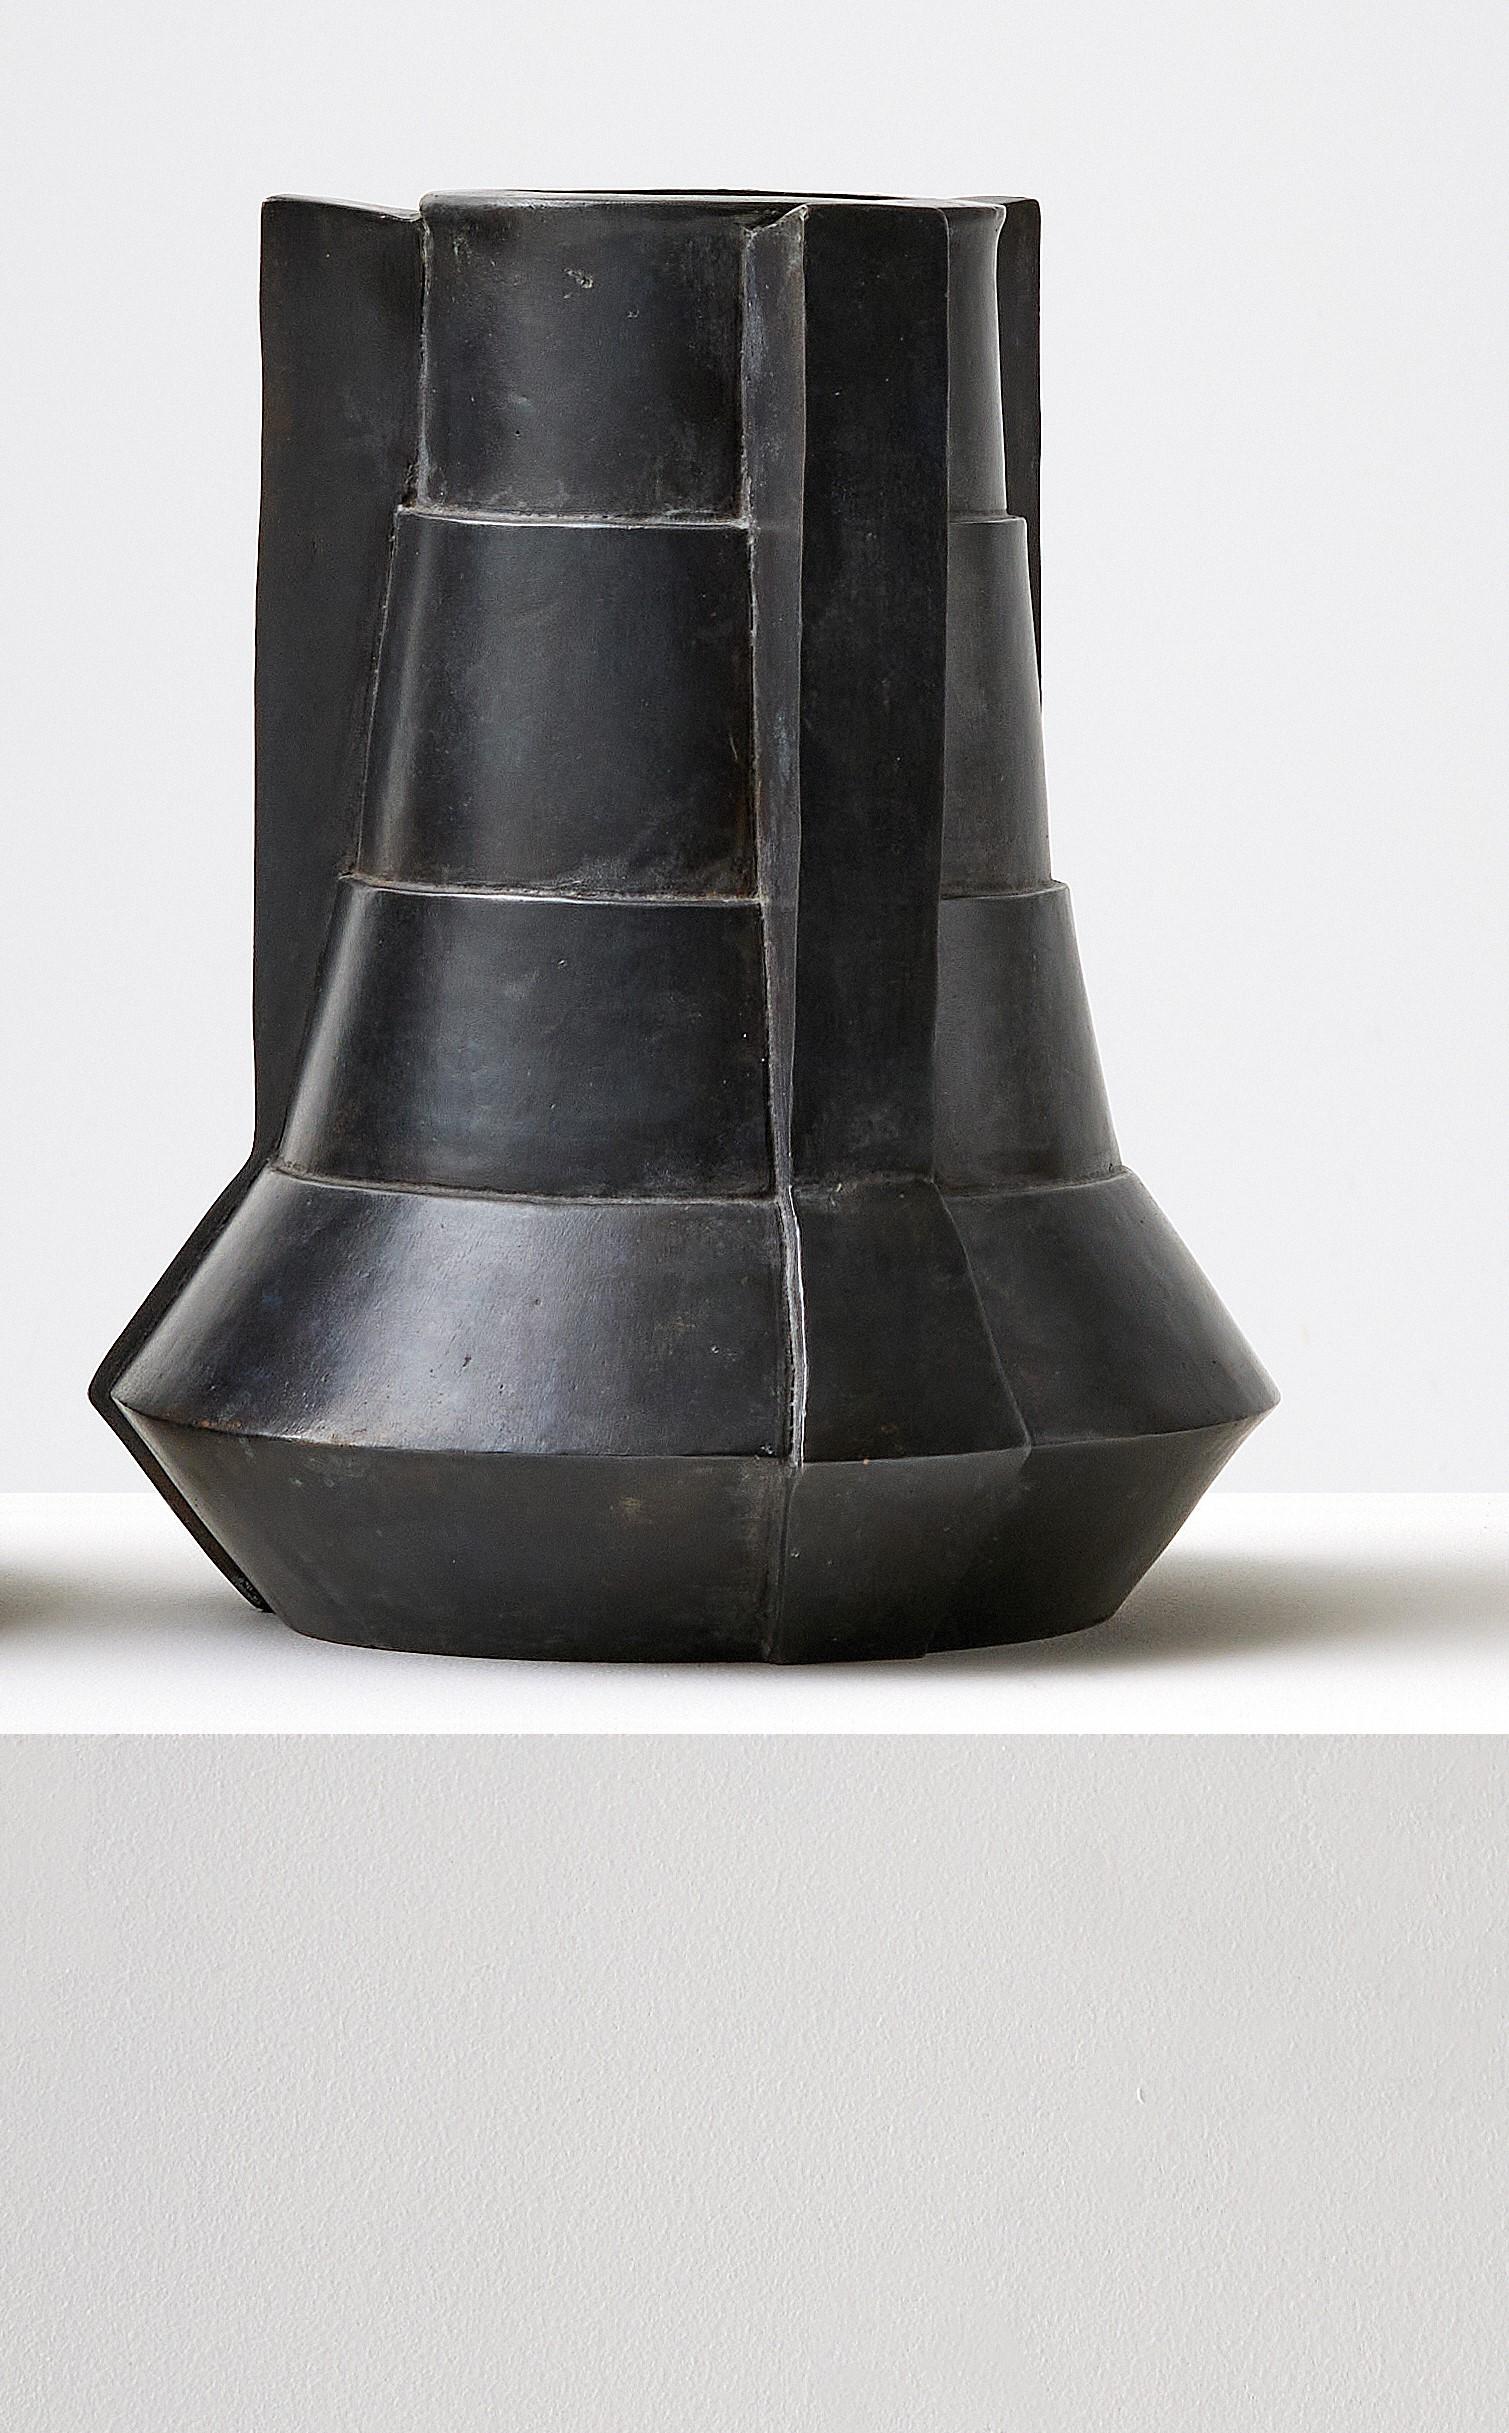 Vase en bronze de Lupo Horio¯kami
Dimensions : Diamètre 20 x hauteur 30 cm
MATERIAL : Bronze noir acide

